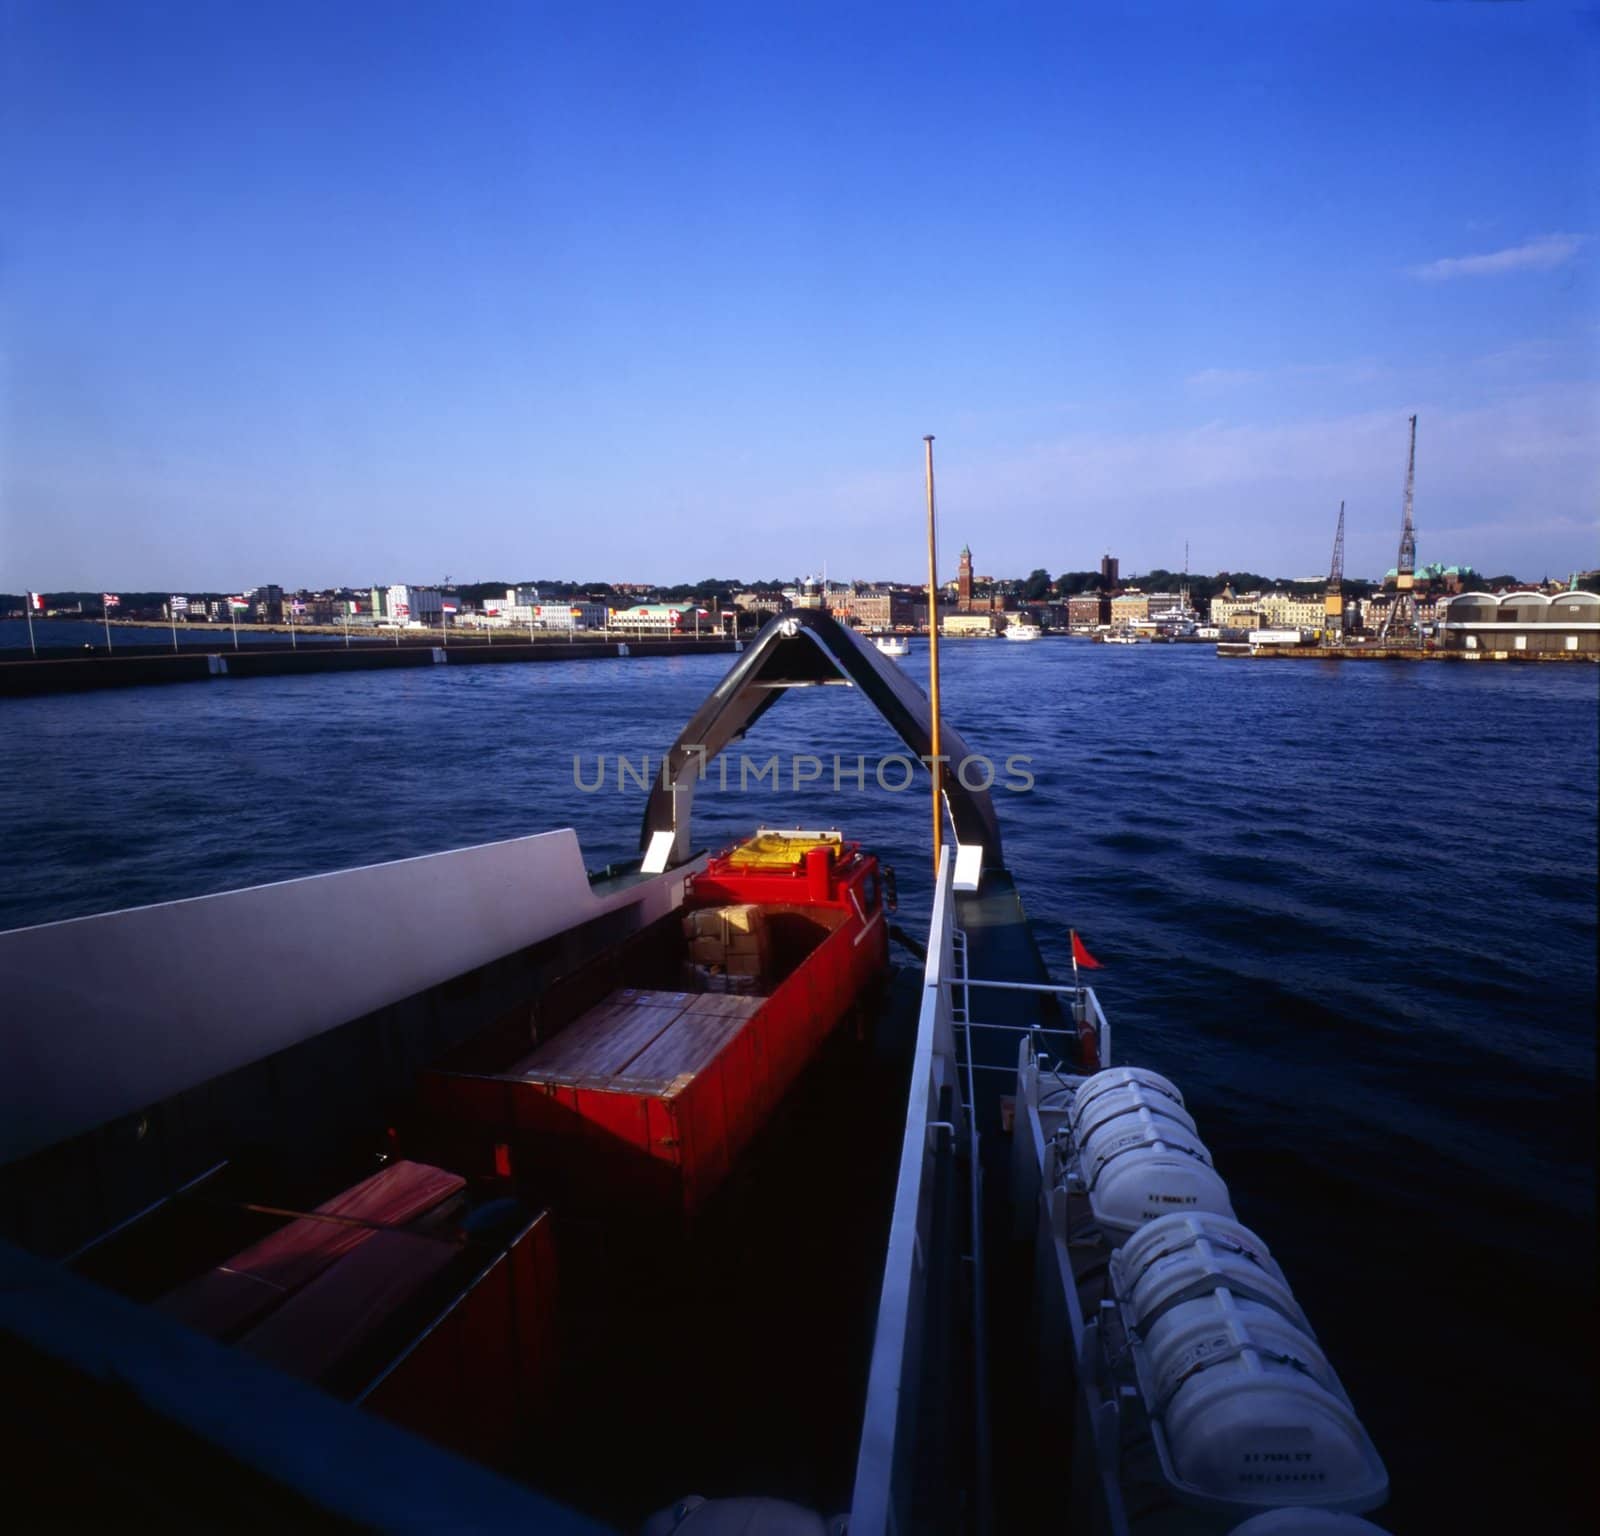 Ferry Boat by jol66